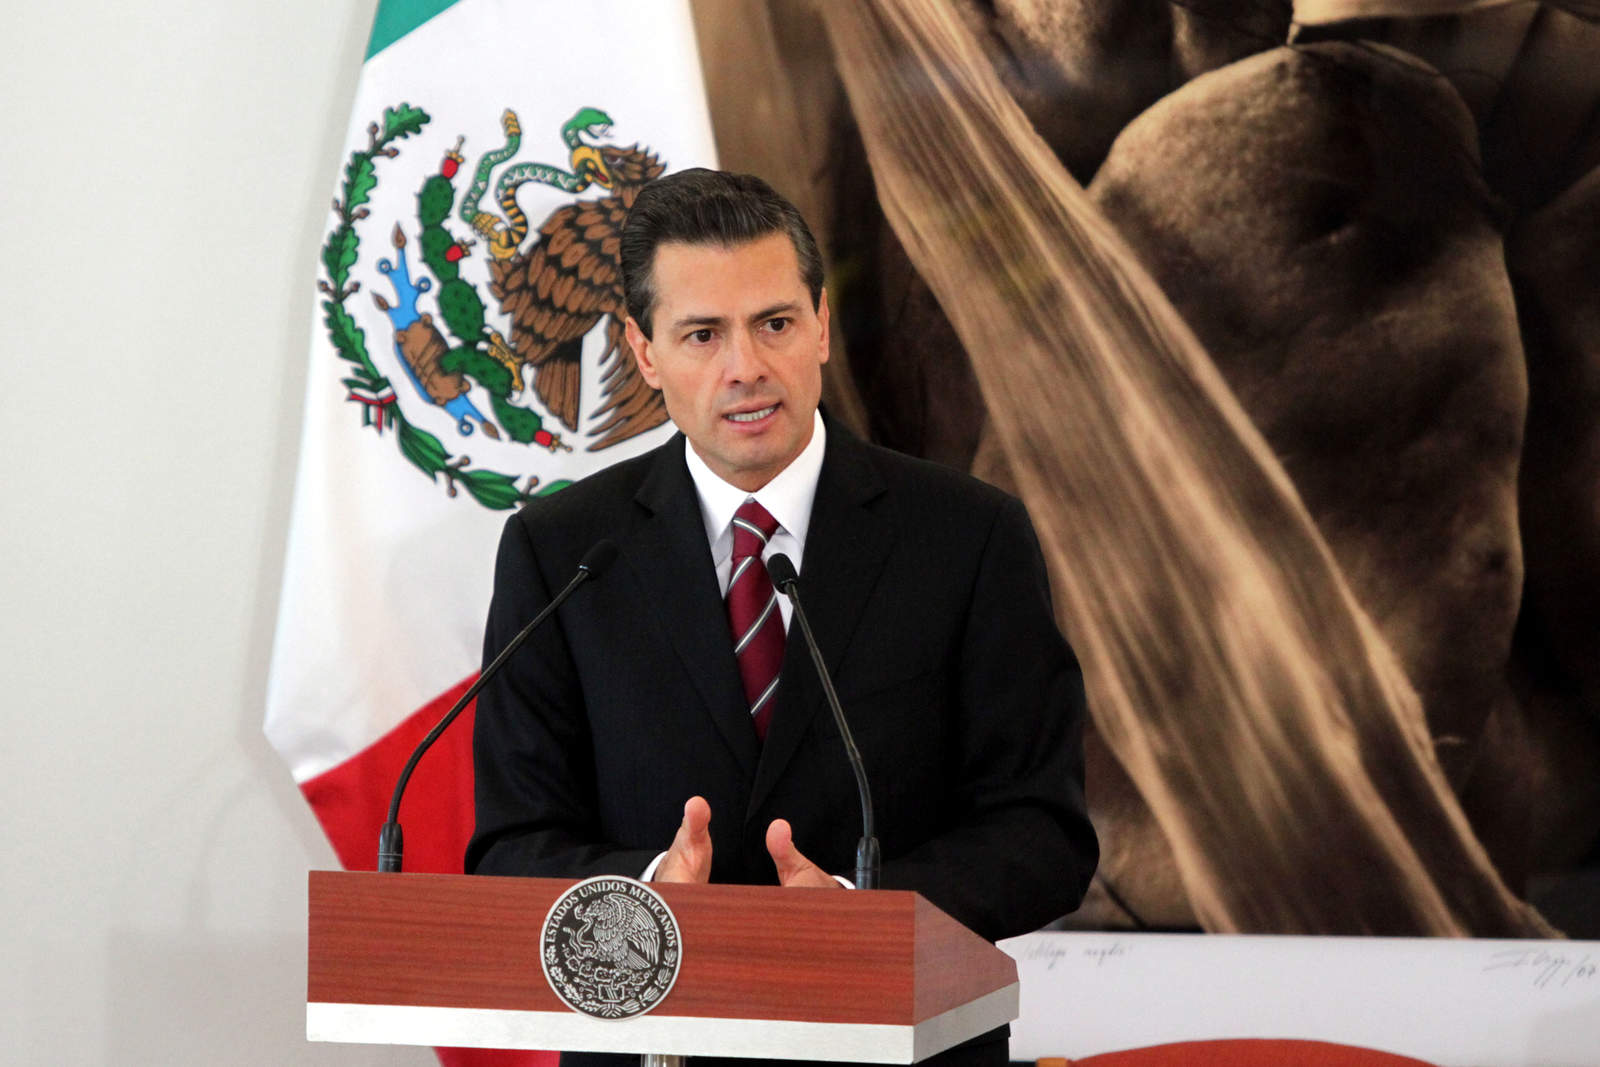 Difamatorio y falso, dichos del abogado de El Chapo: Presidencia de México. Noticias en tiempo real